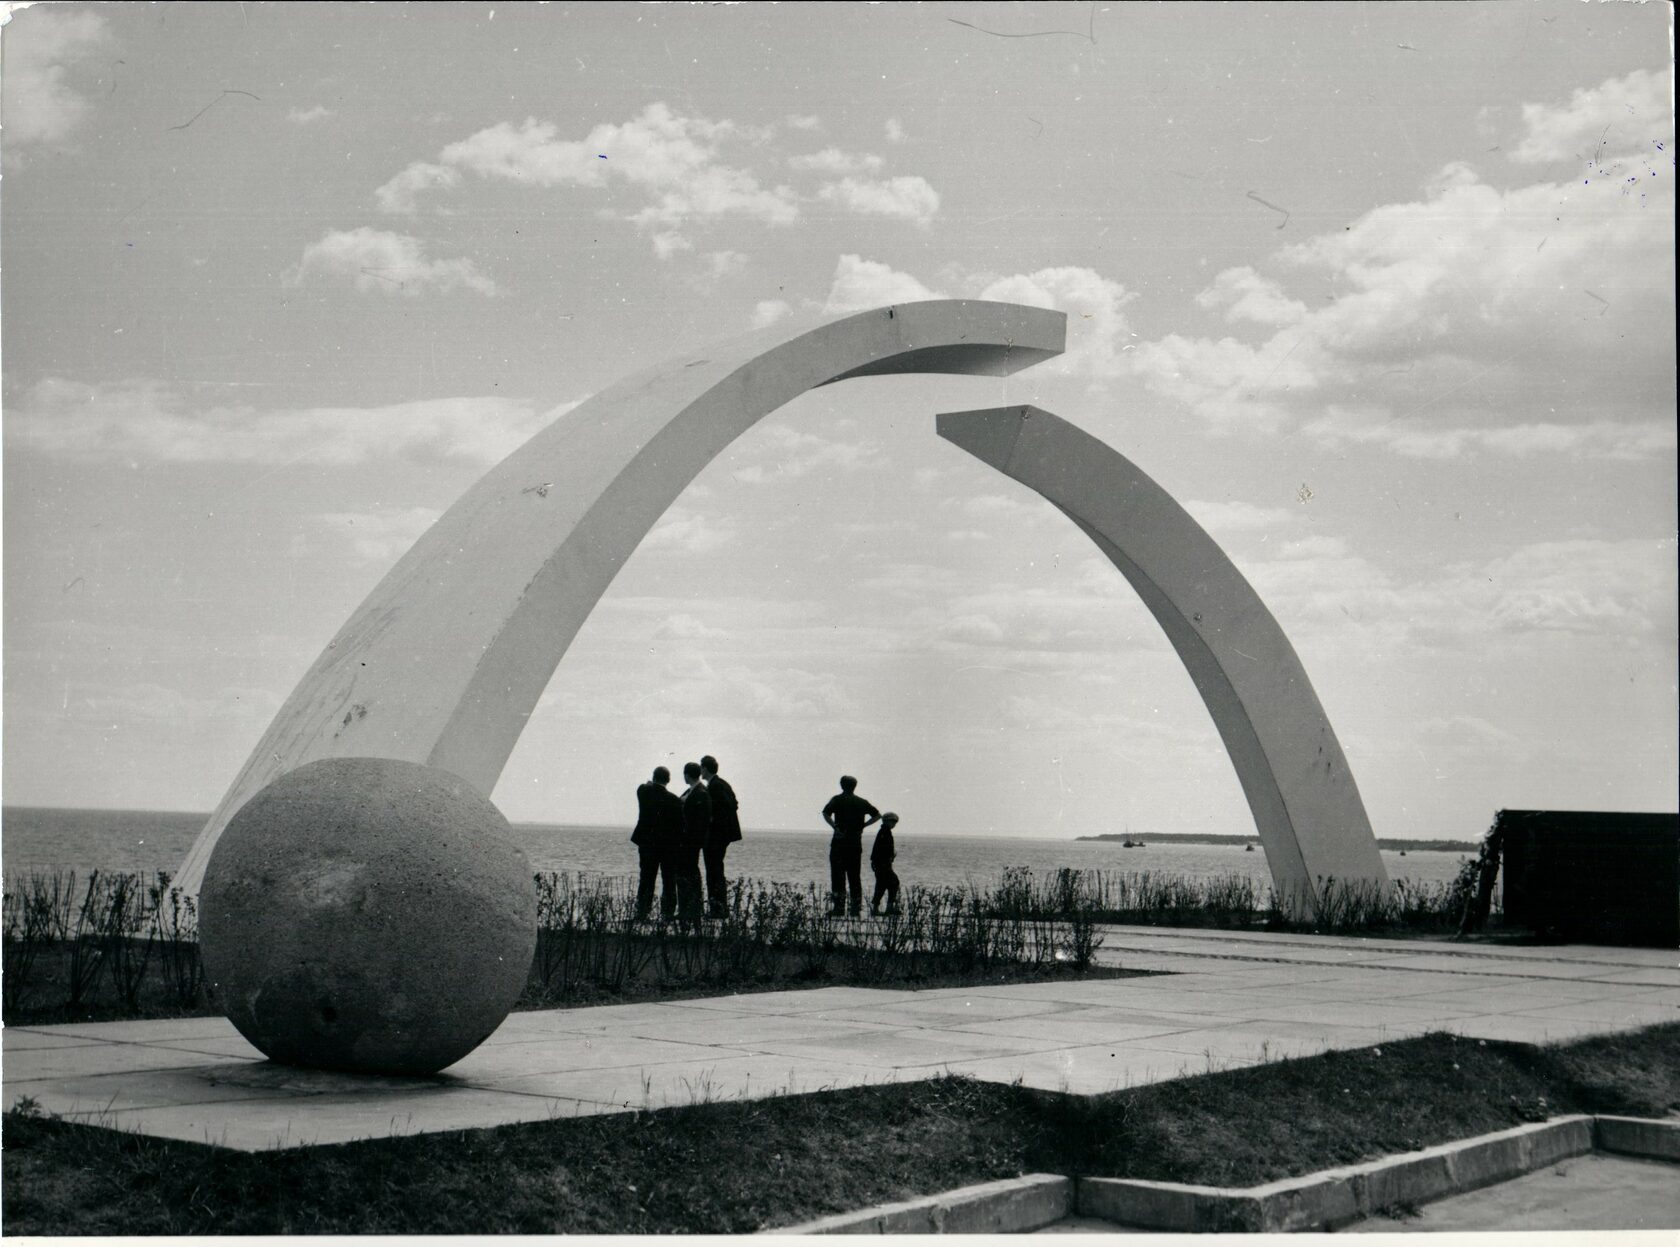 Мемориал разорванное кольцо блокады Ленинграда